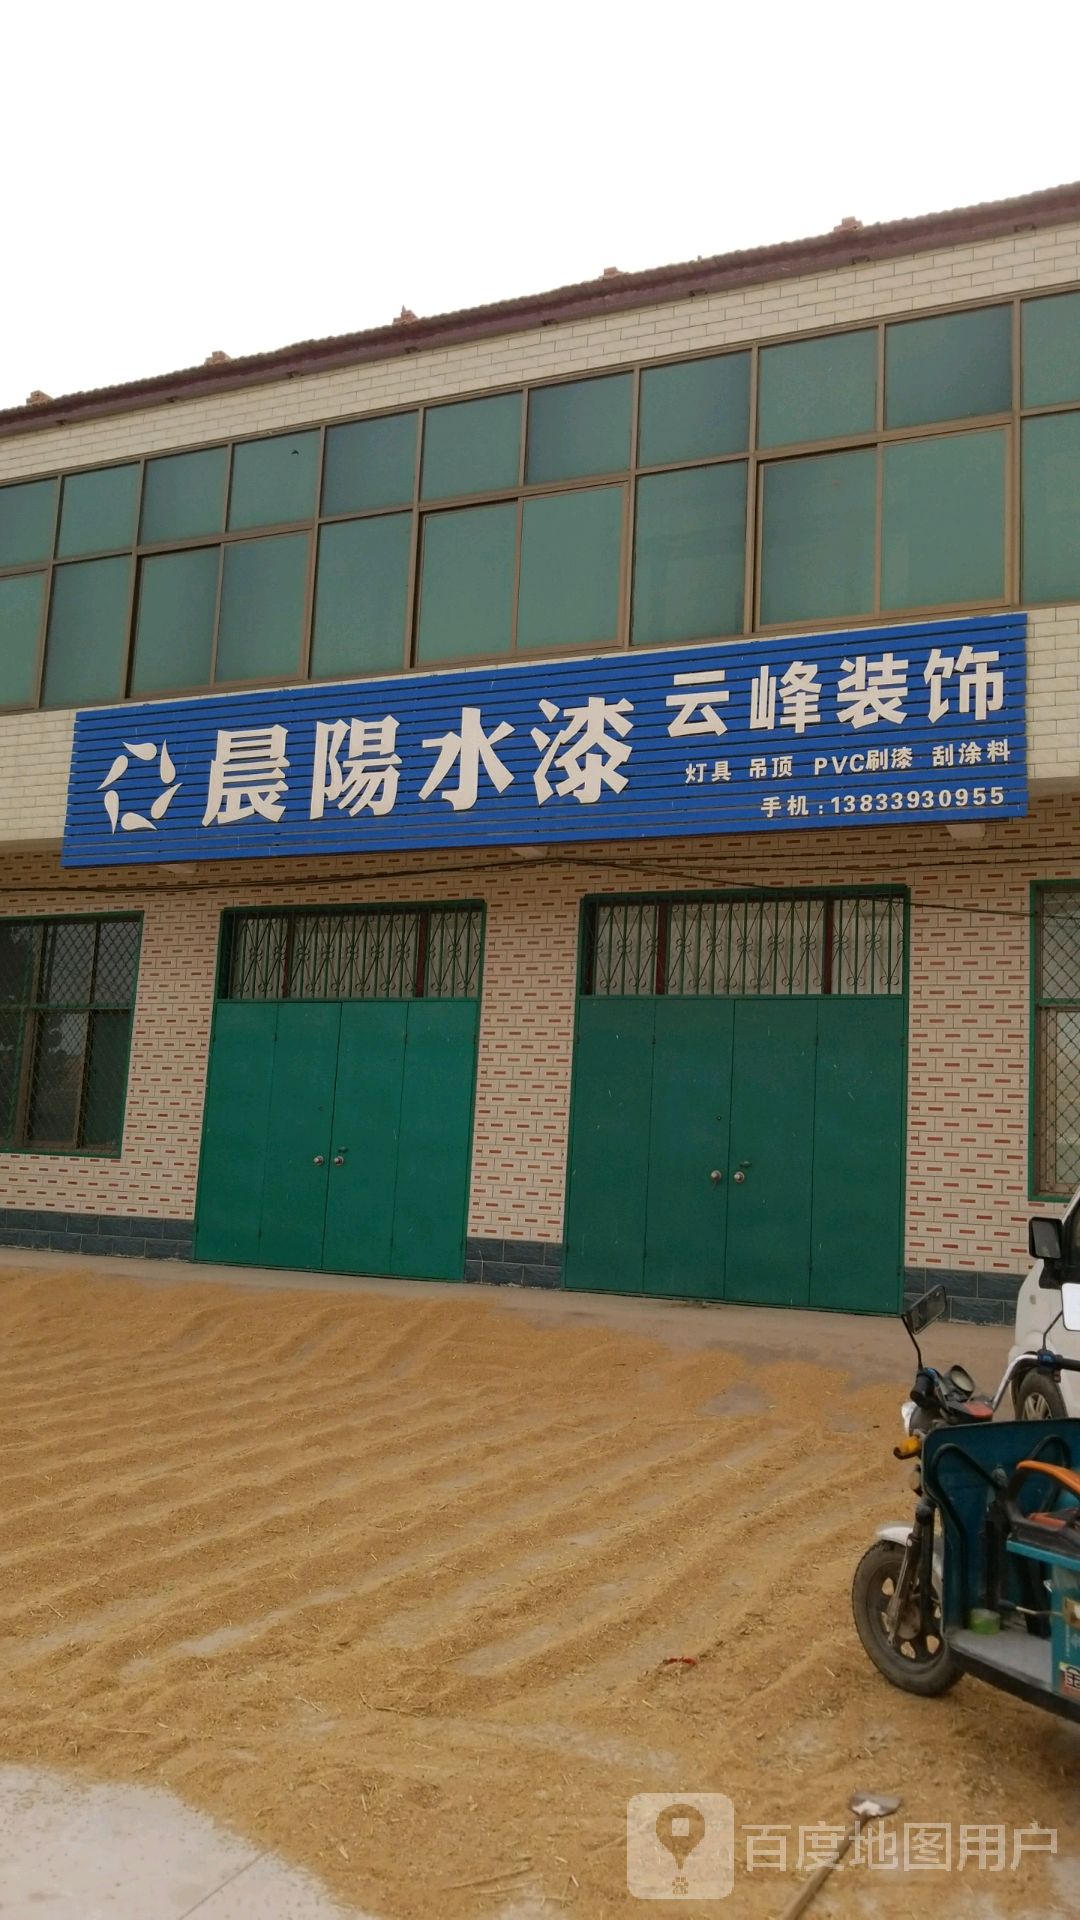 邢台市临西县吕尖线樊村校区中心小学南侧约140米